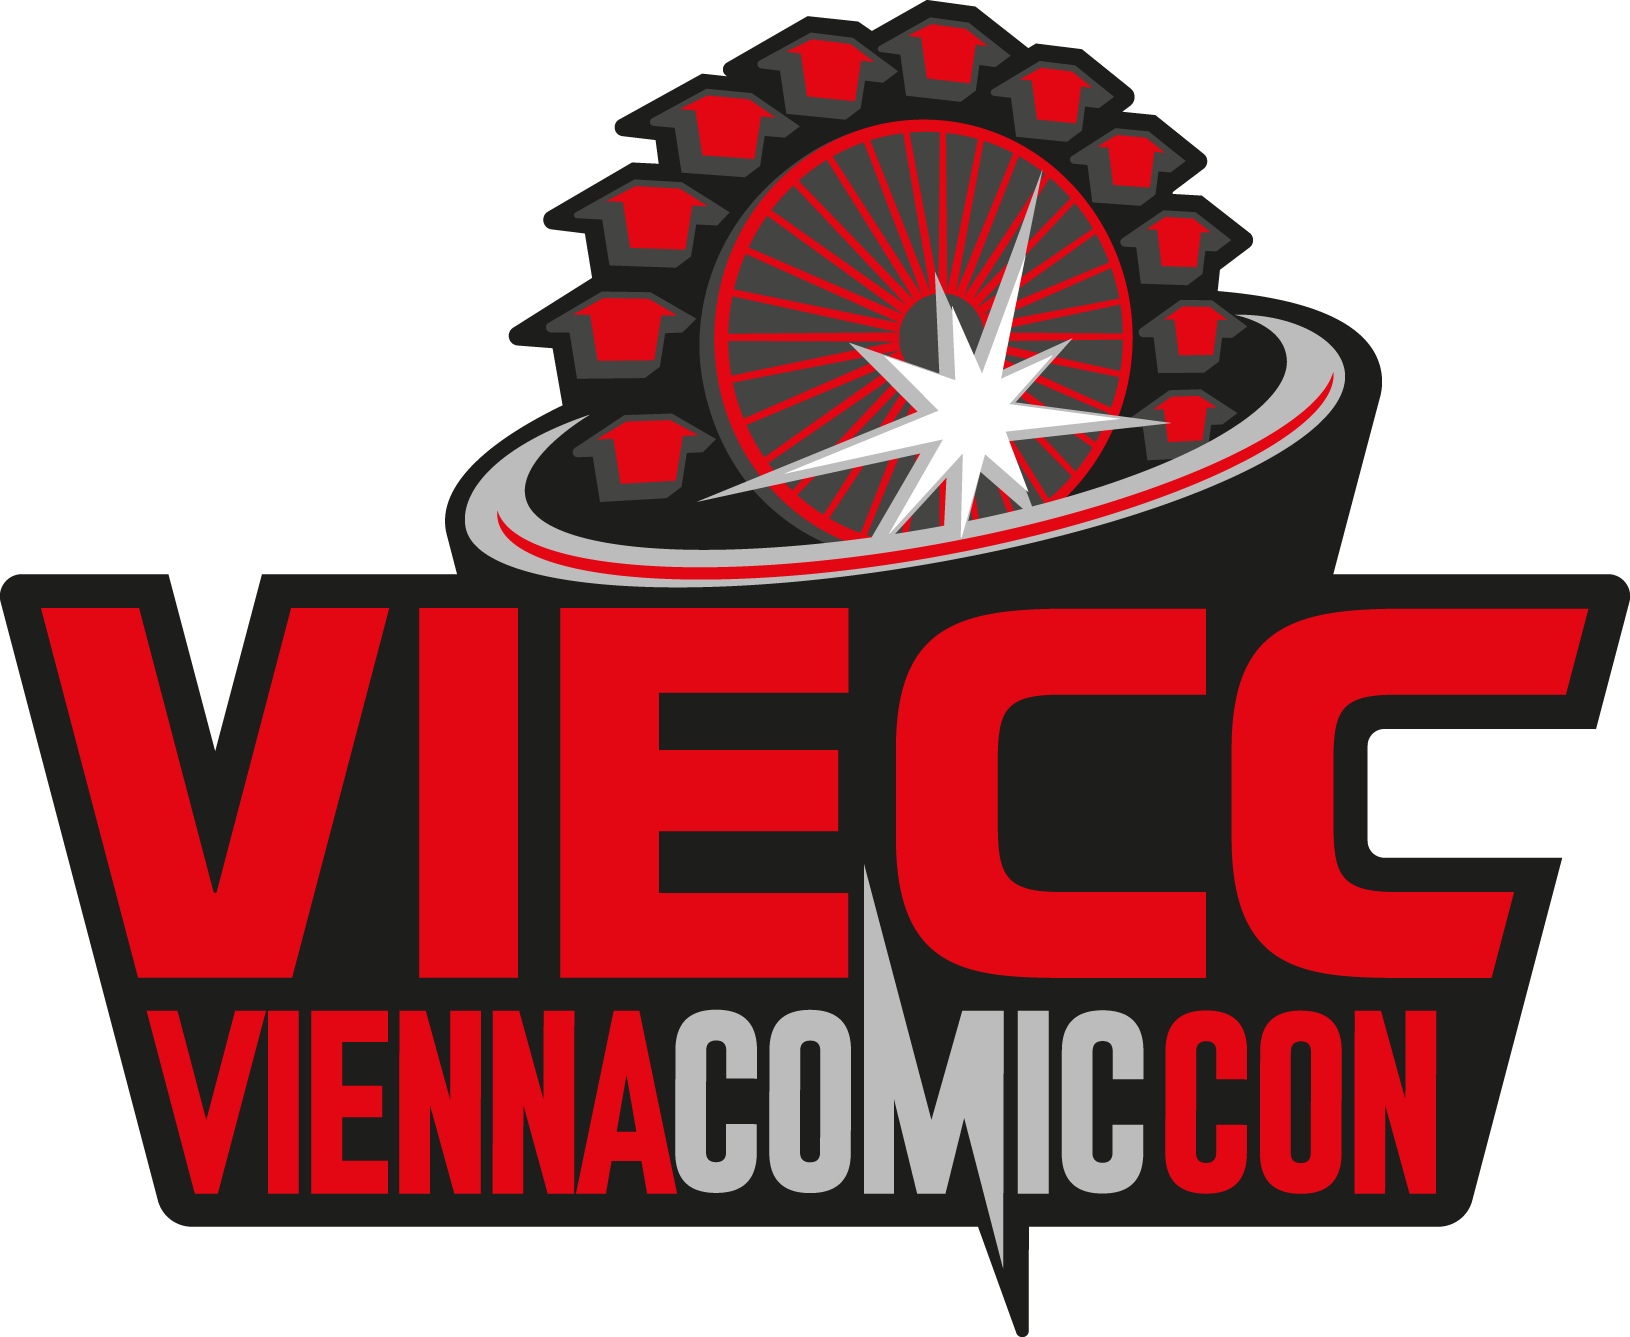 VIECC - Vienna Comic Con